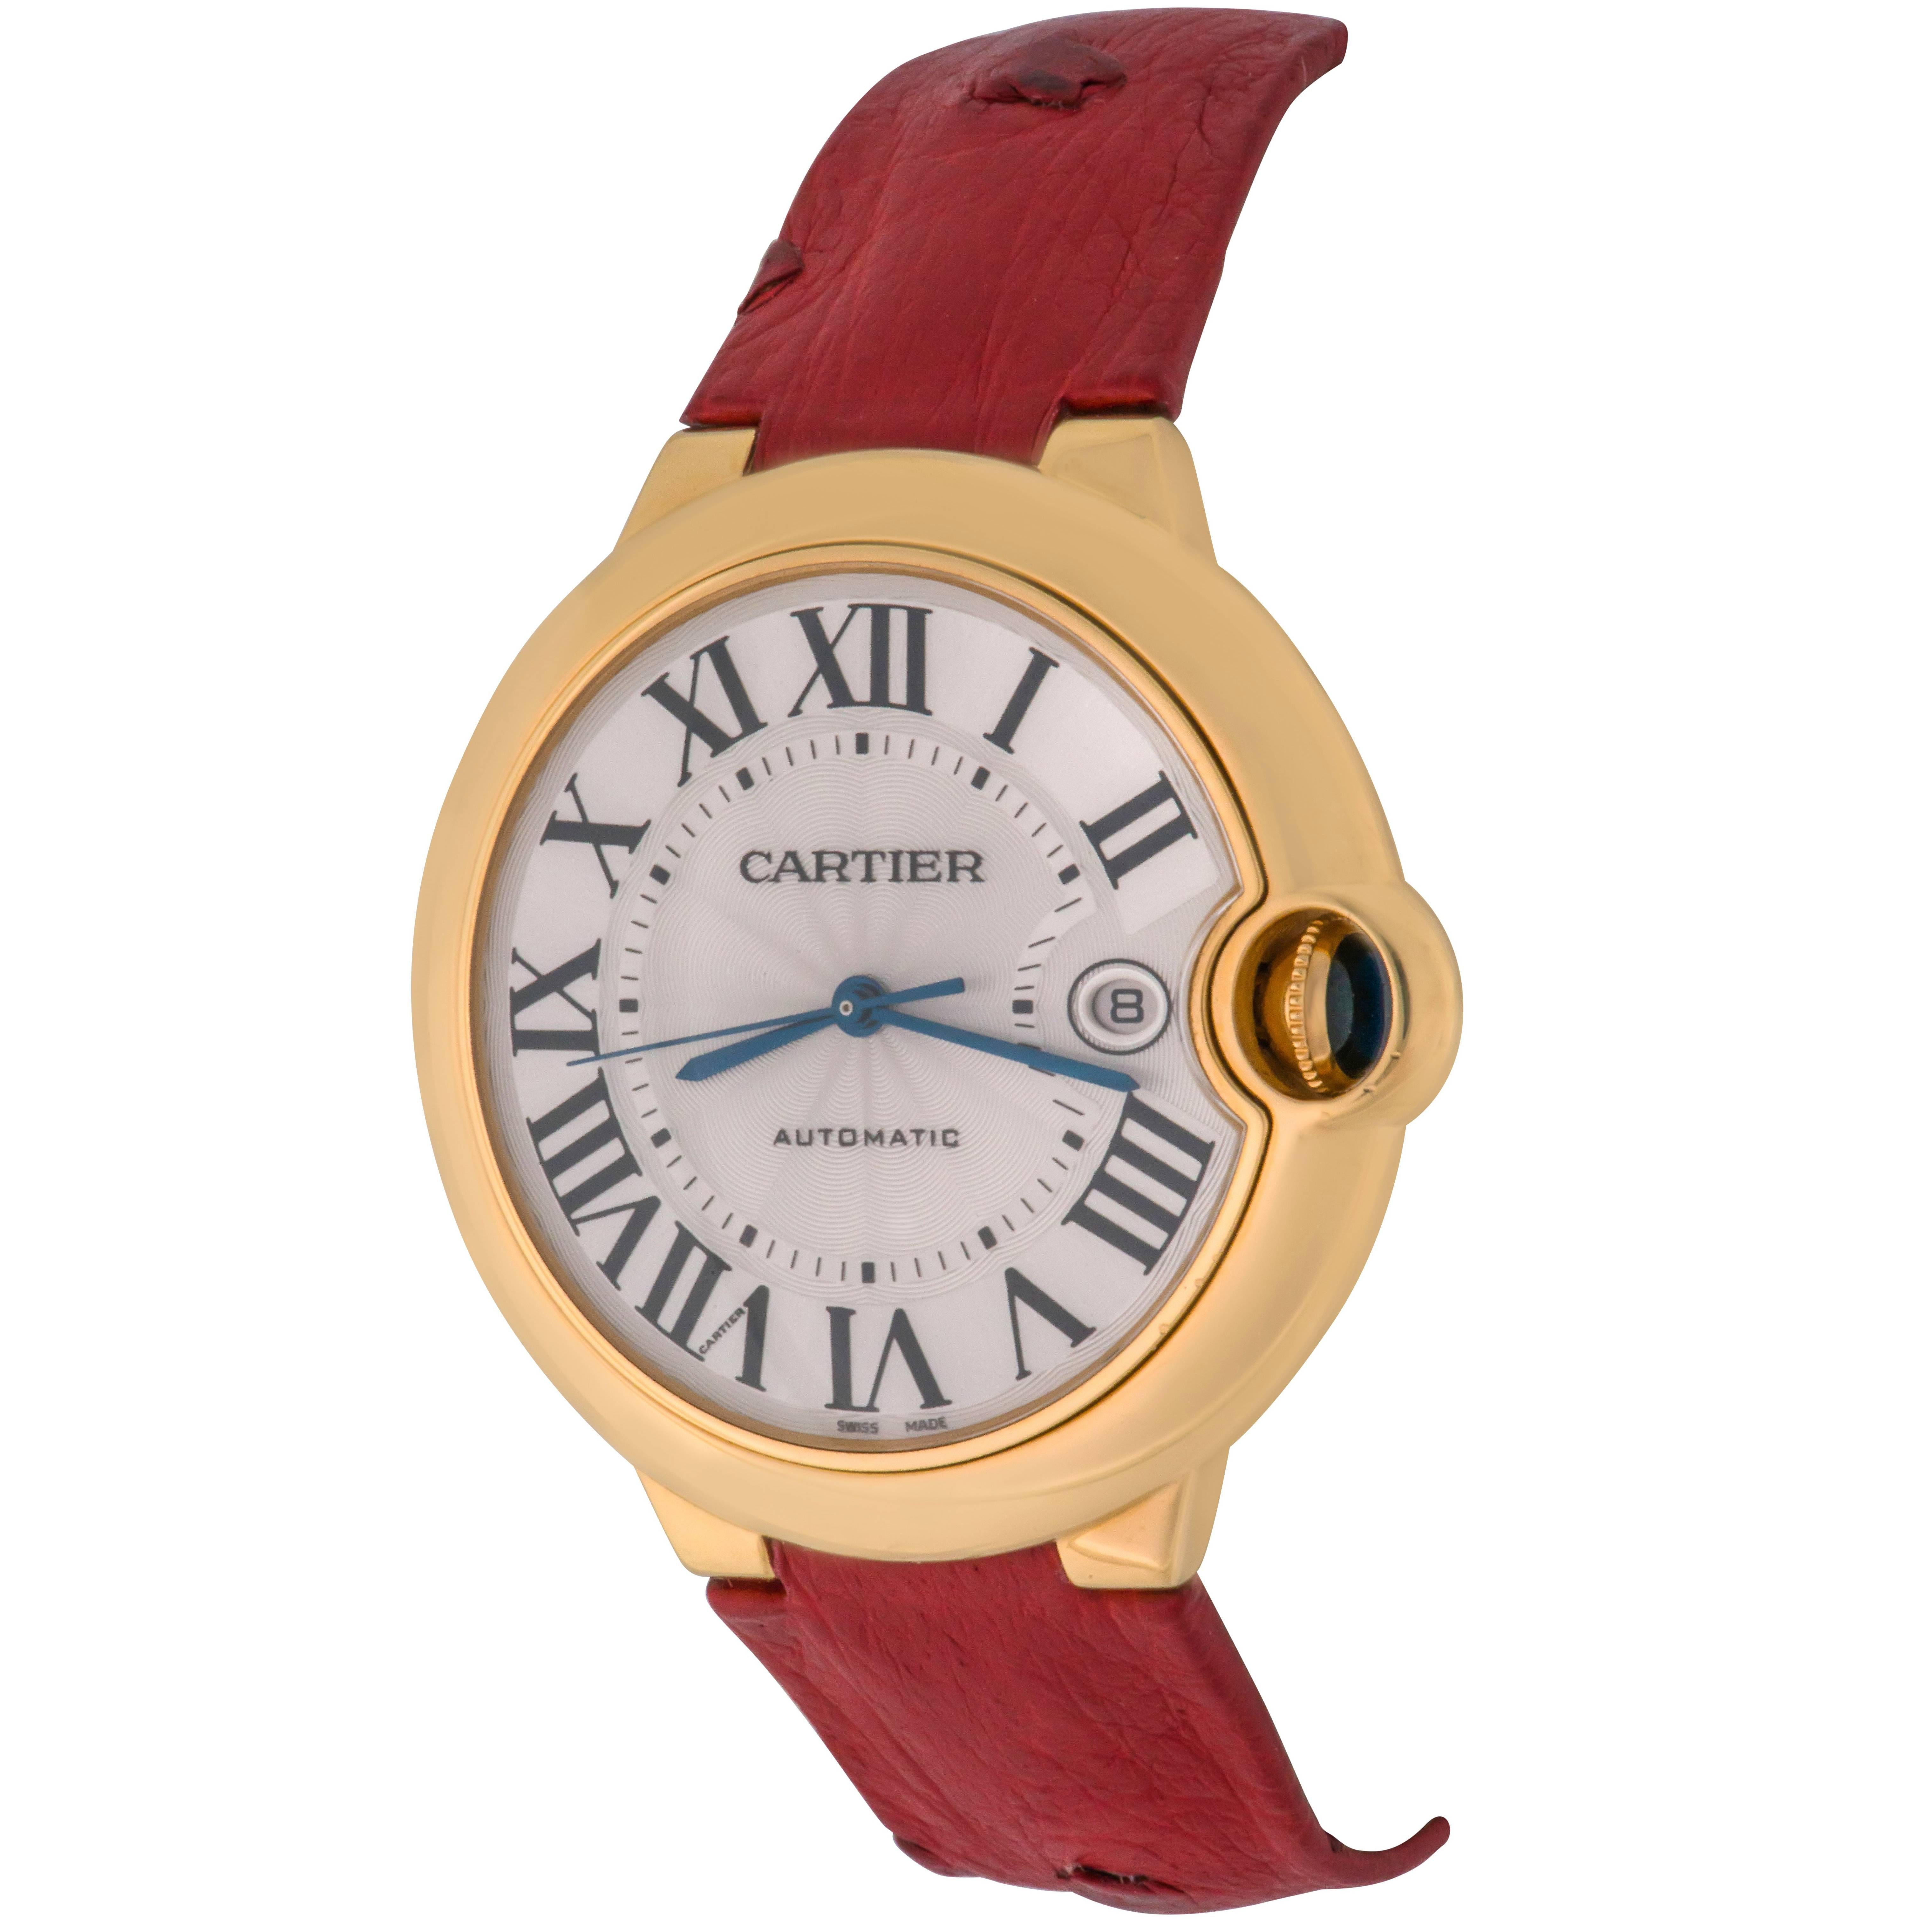 Cartier 18k Yellow Gold Ballon Bleu Automatic Wrist Watch Ref W6900551